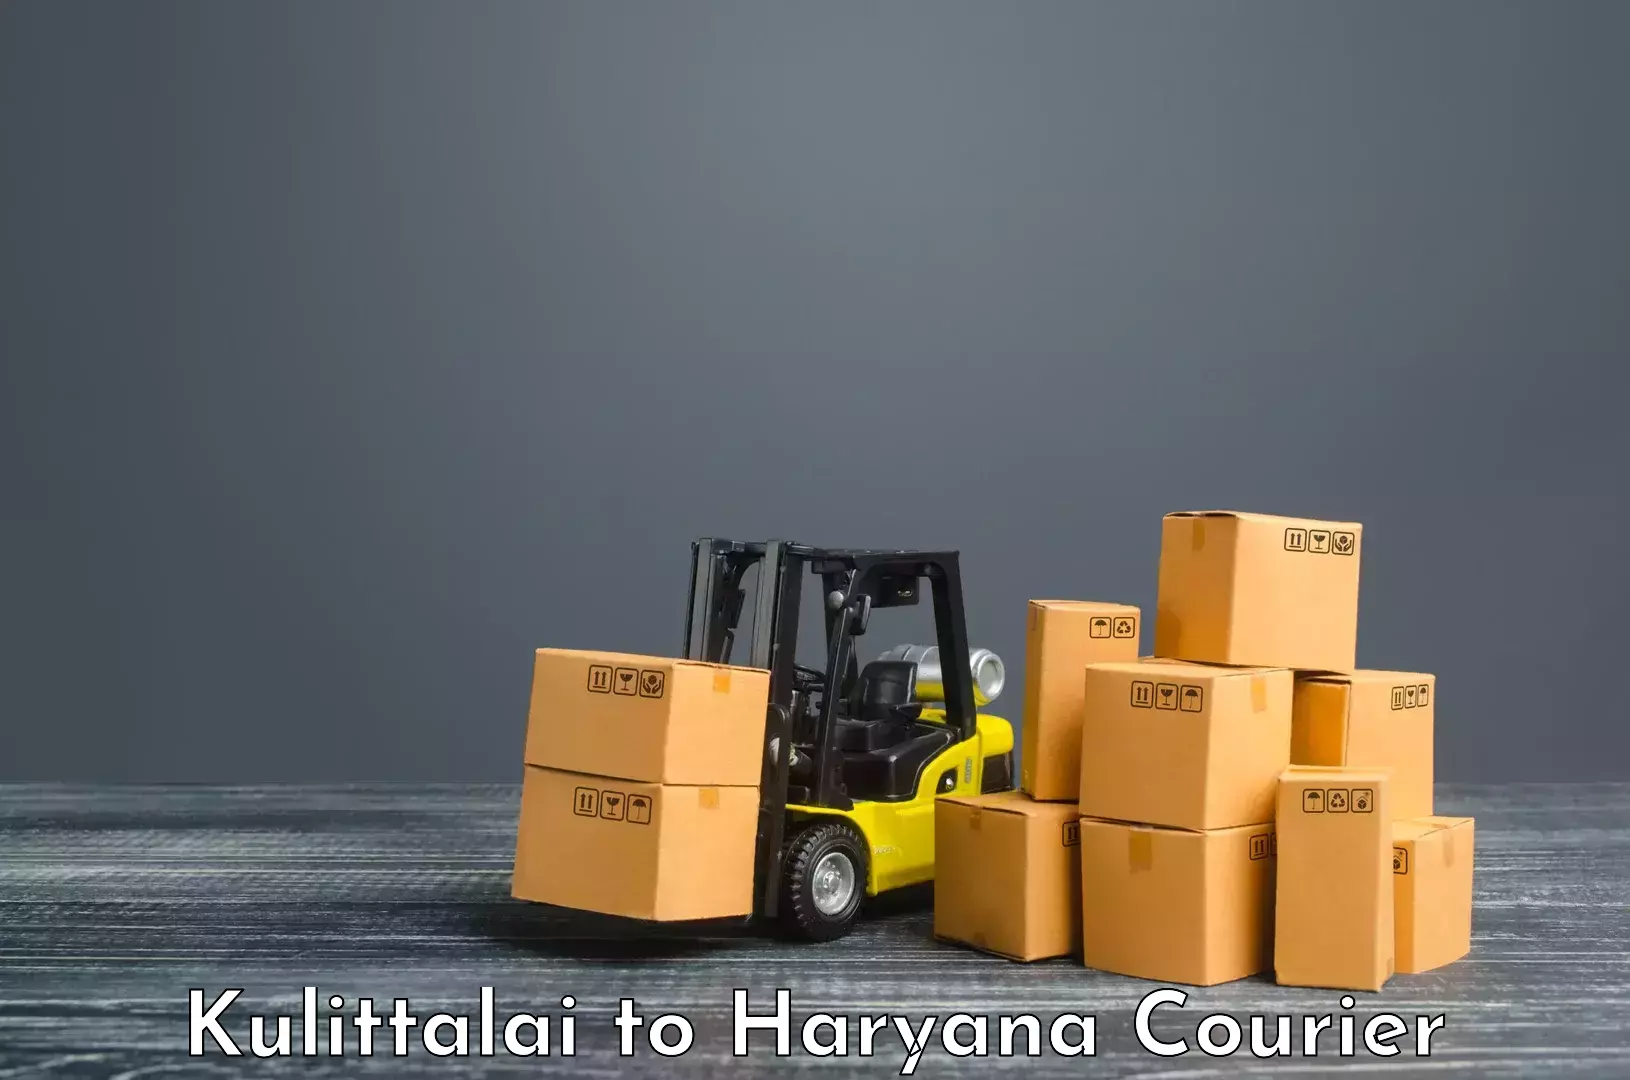 Customized shipping options Kulittalai to Chaudhary Charan Singh Haryana Agricultural University Hisar